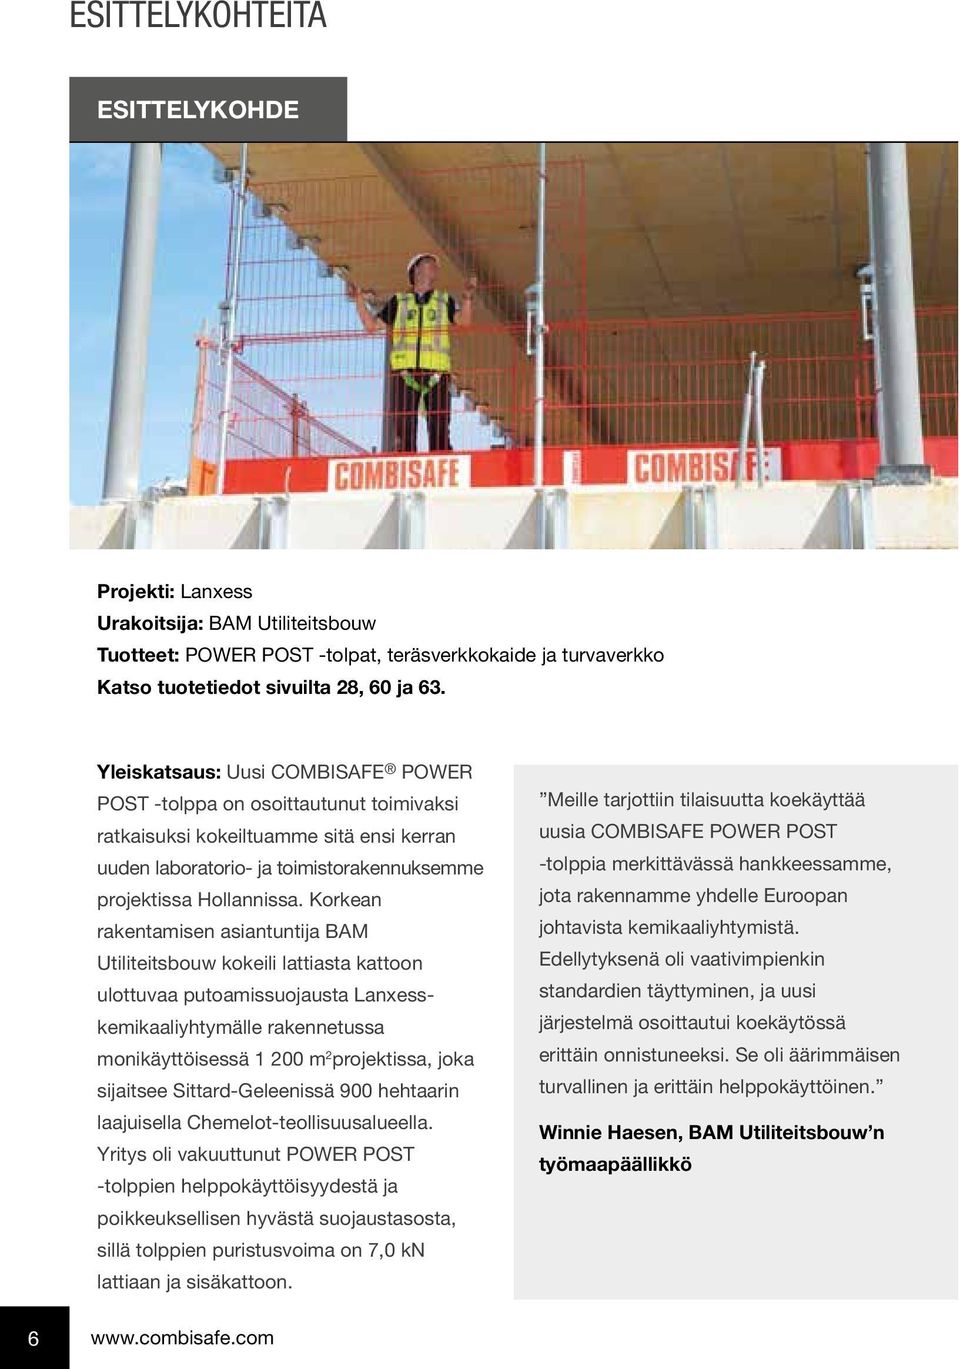 Korkean rakentamisen asiantuntija BAM Utiliteitsbouw kokeili lattiasta kattoon ulottuvaa putoamissuojausta Lanxesskemikaaliyhtymälle rakennetussa monikäyttöisessä 1 200 m 2 projektissa, joka